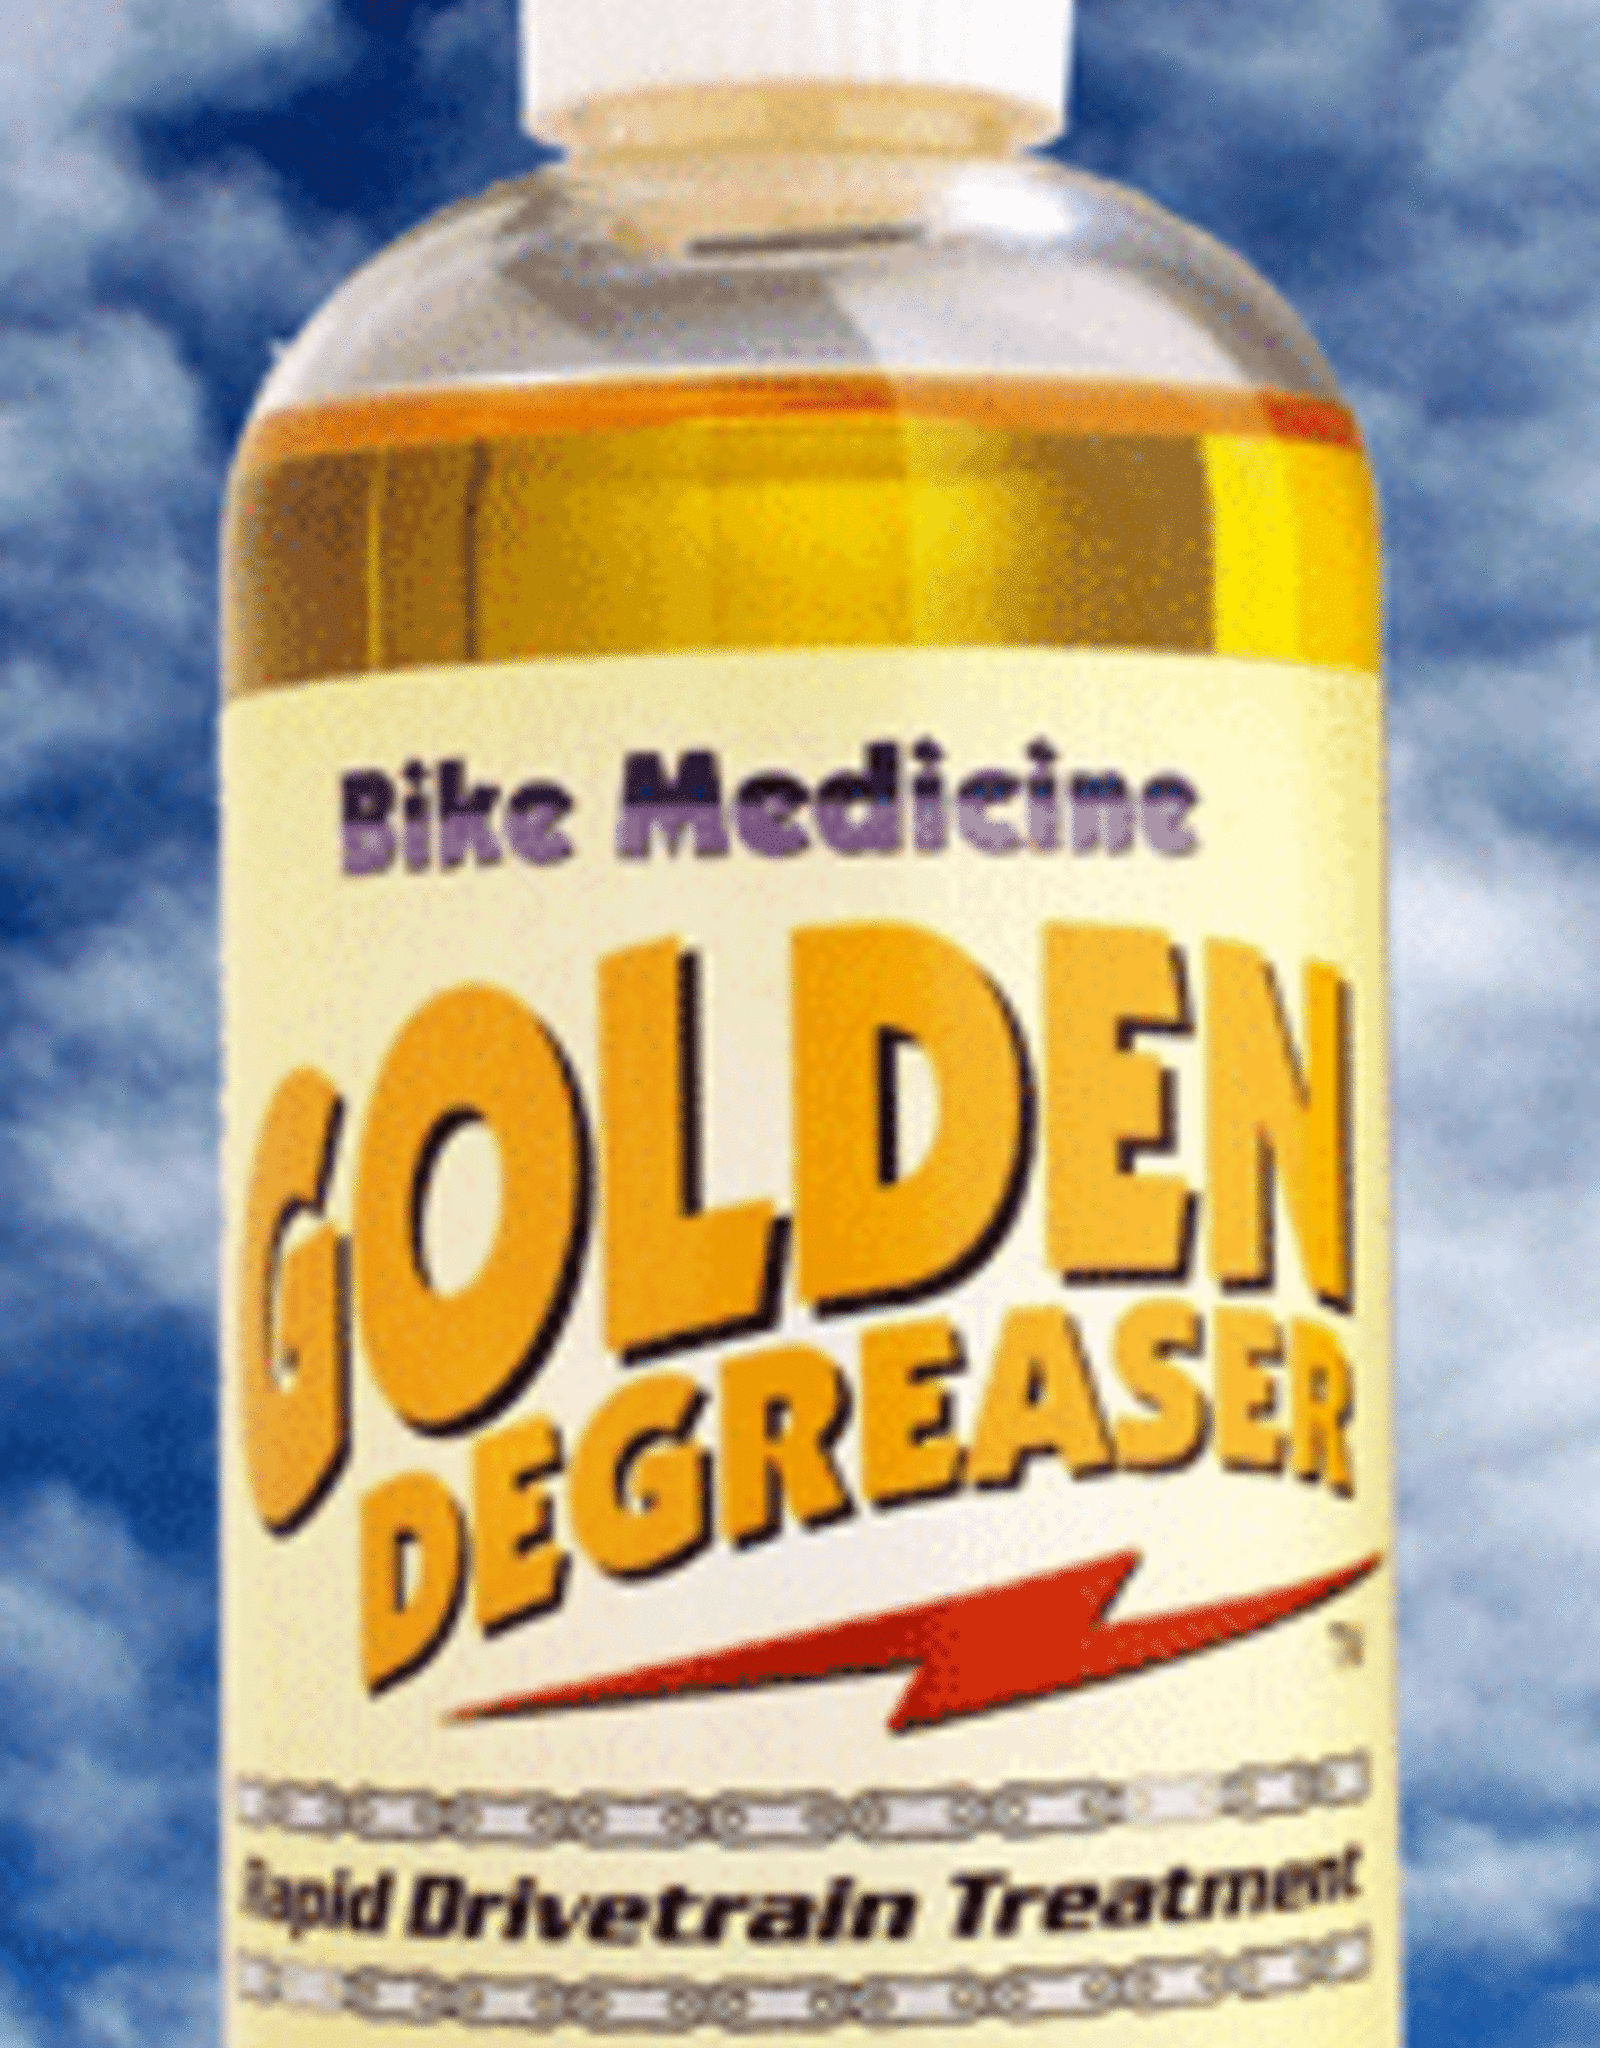 BIKE MEDICINE CRD-CLEANER BIKE MED GOLD DEGREASER 8oz NO ONLINE SALES